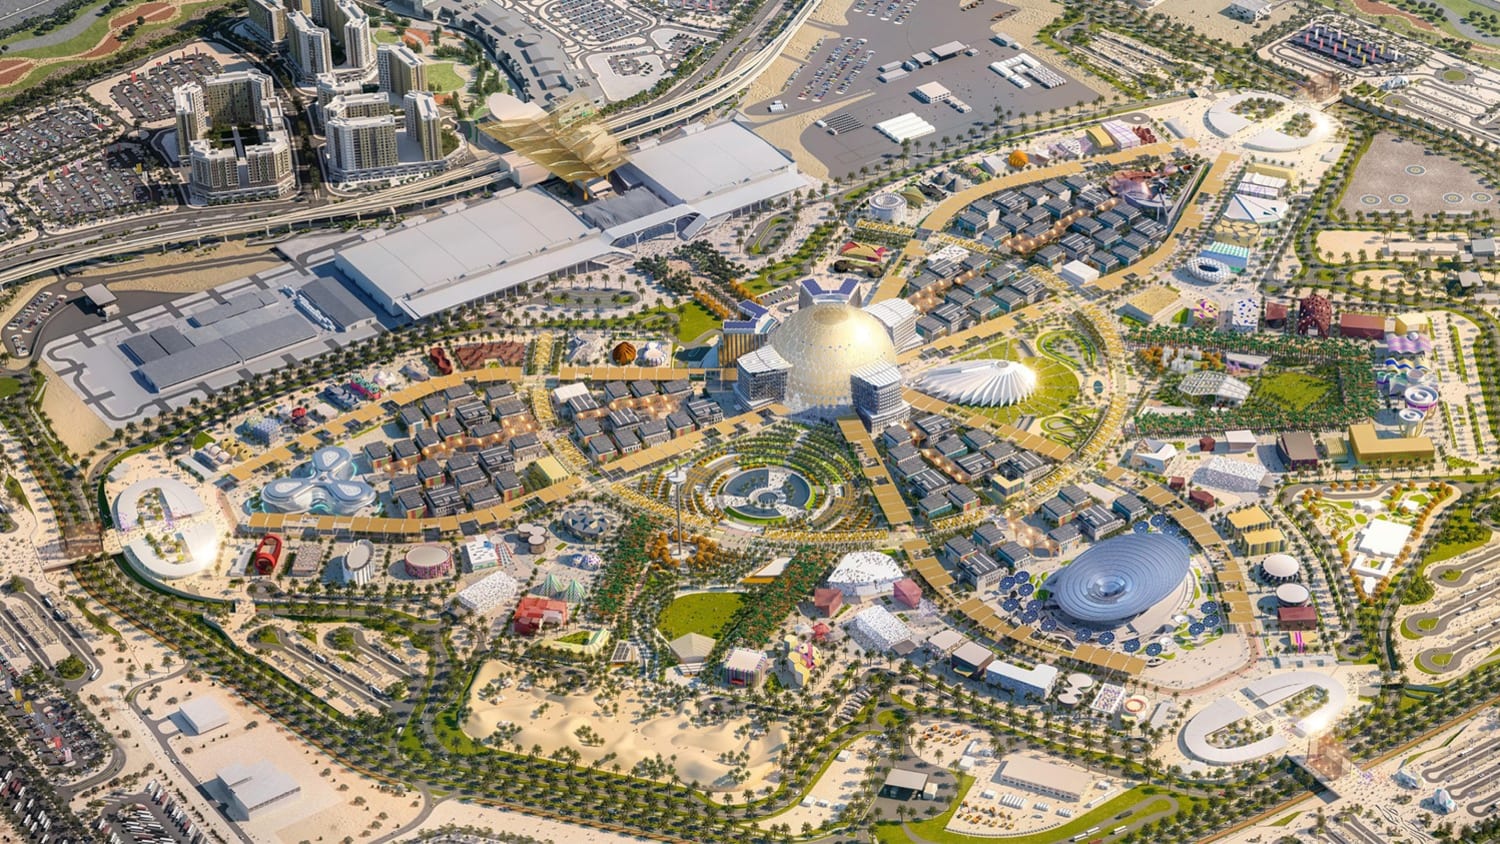  صورة مأخوذة من الأعلى للمنطقة التي يقام فيها معرض إكسبو 2020 في دبي